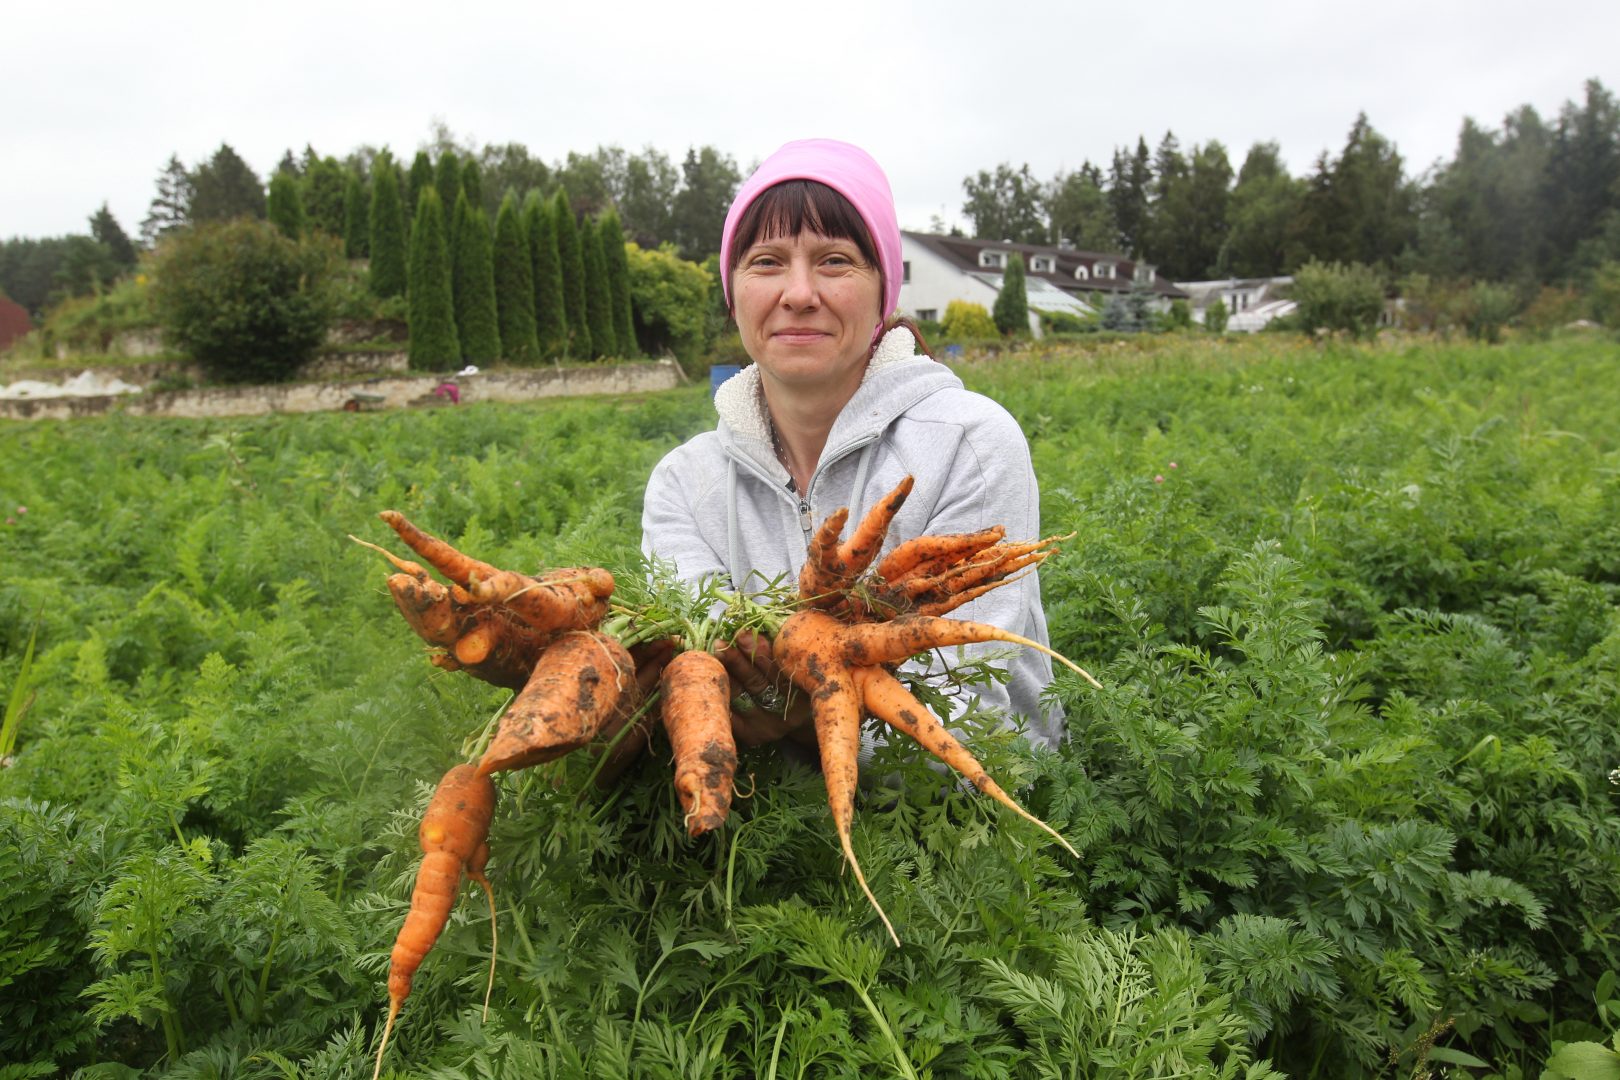 13 августа 2020 года. Марушкинское. Работник фермерского хозяйства Алексея Буркова Татьяна Тимецкая показывает, какую морковь удалось вырастить в этом году